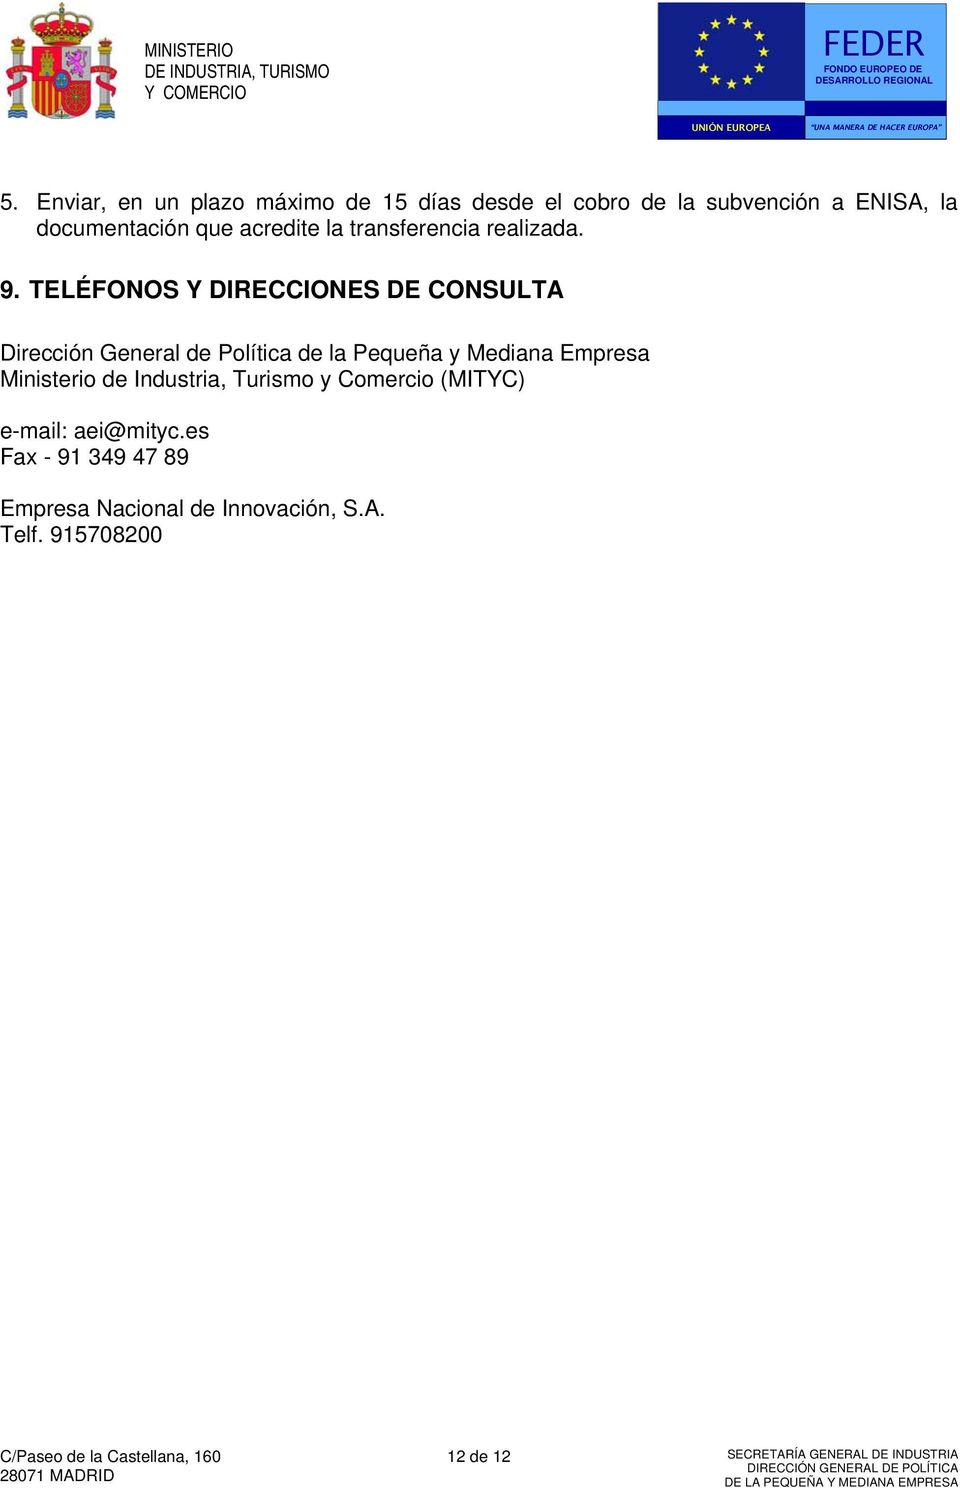 TELÉFONOS Y DIRECCIONES DE CONSULTA Dirección General de Política de la Pequeña y Mediana Empresa Ministerio de Industria, Turismo y Comercio (MITYC)